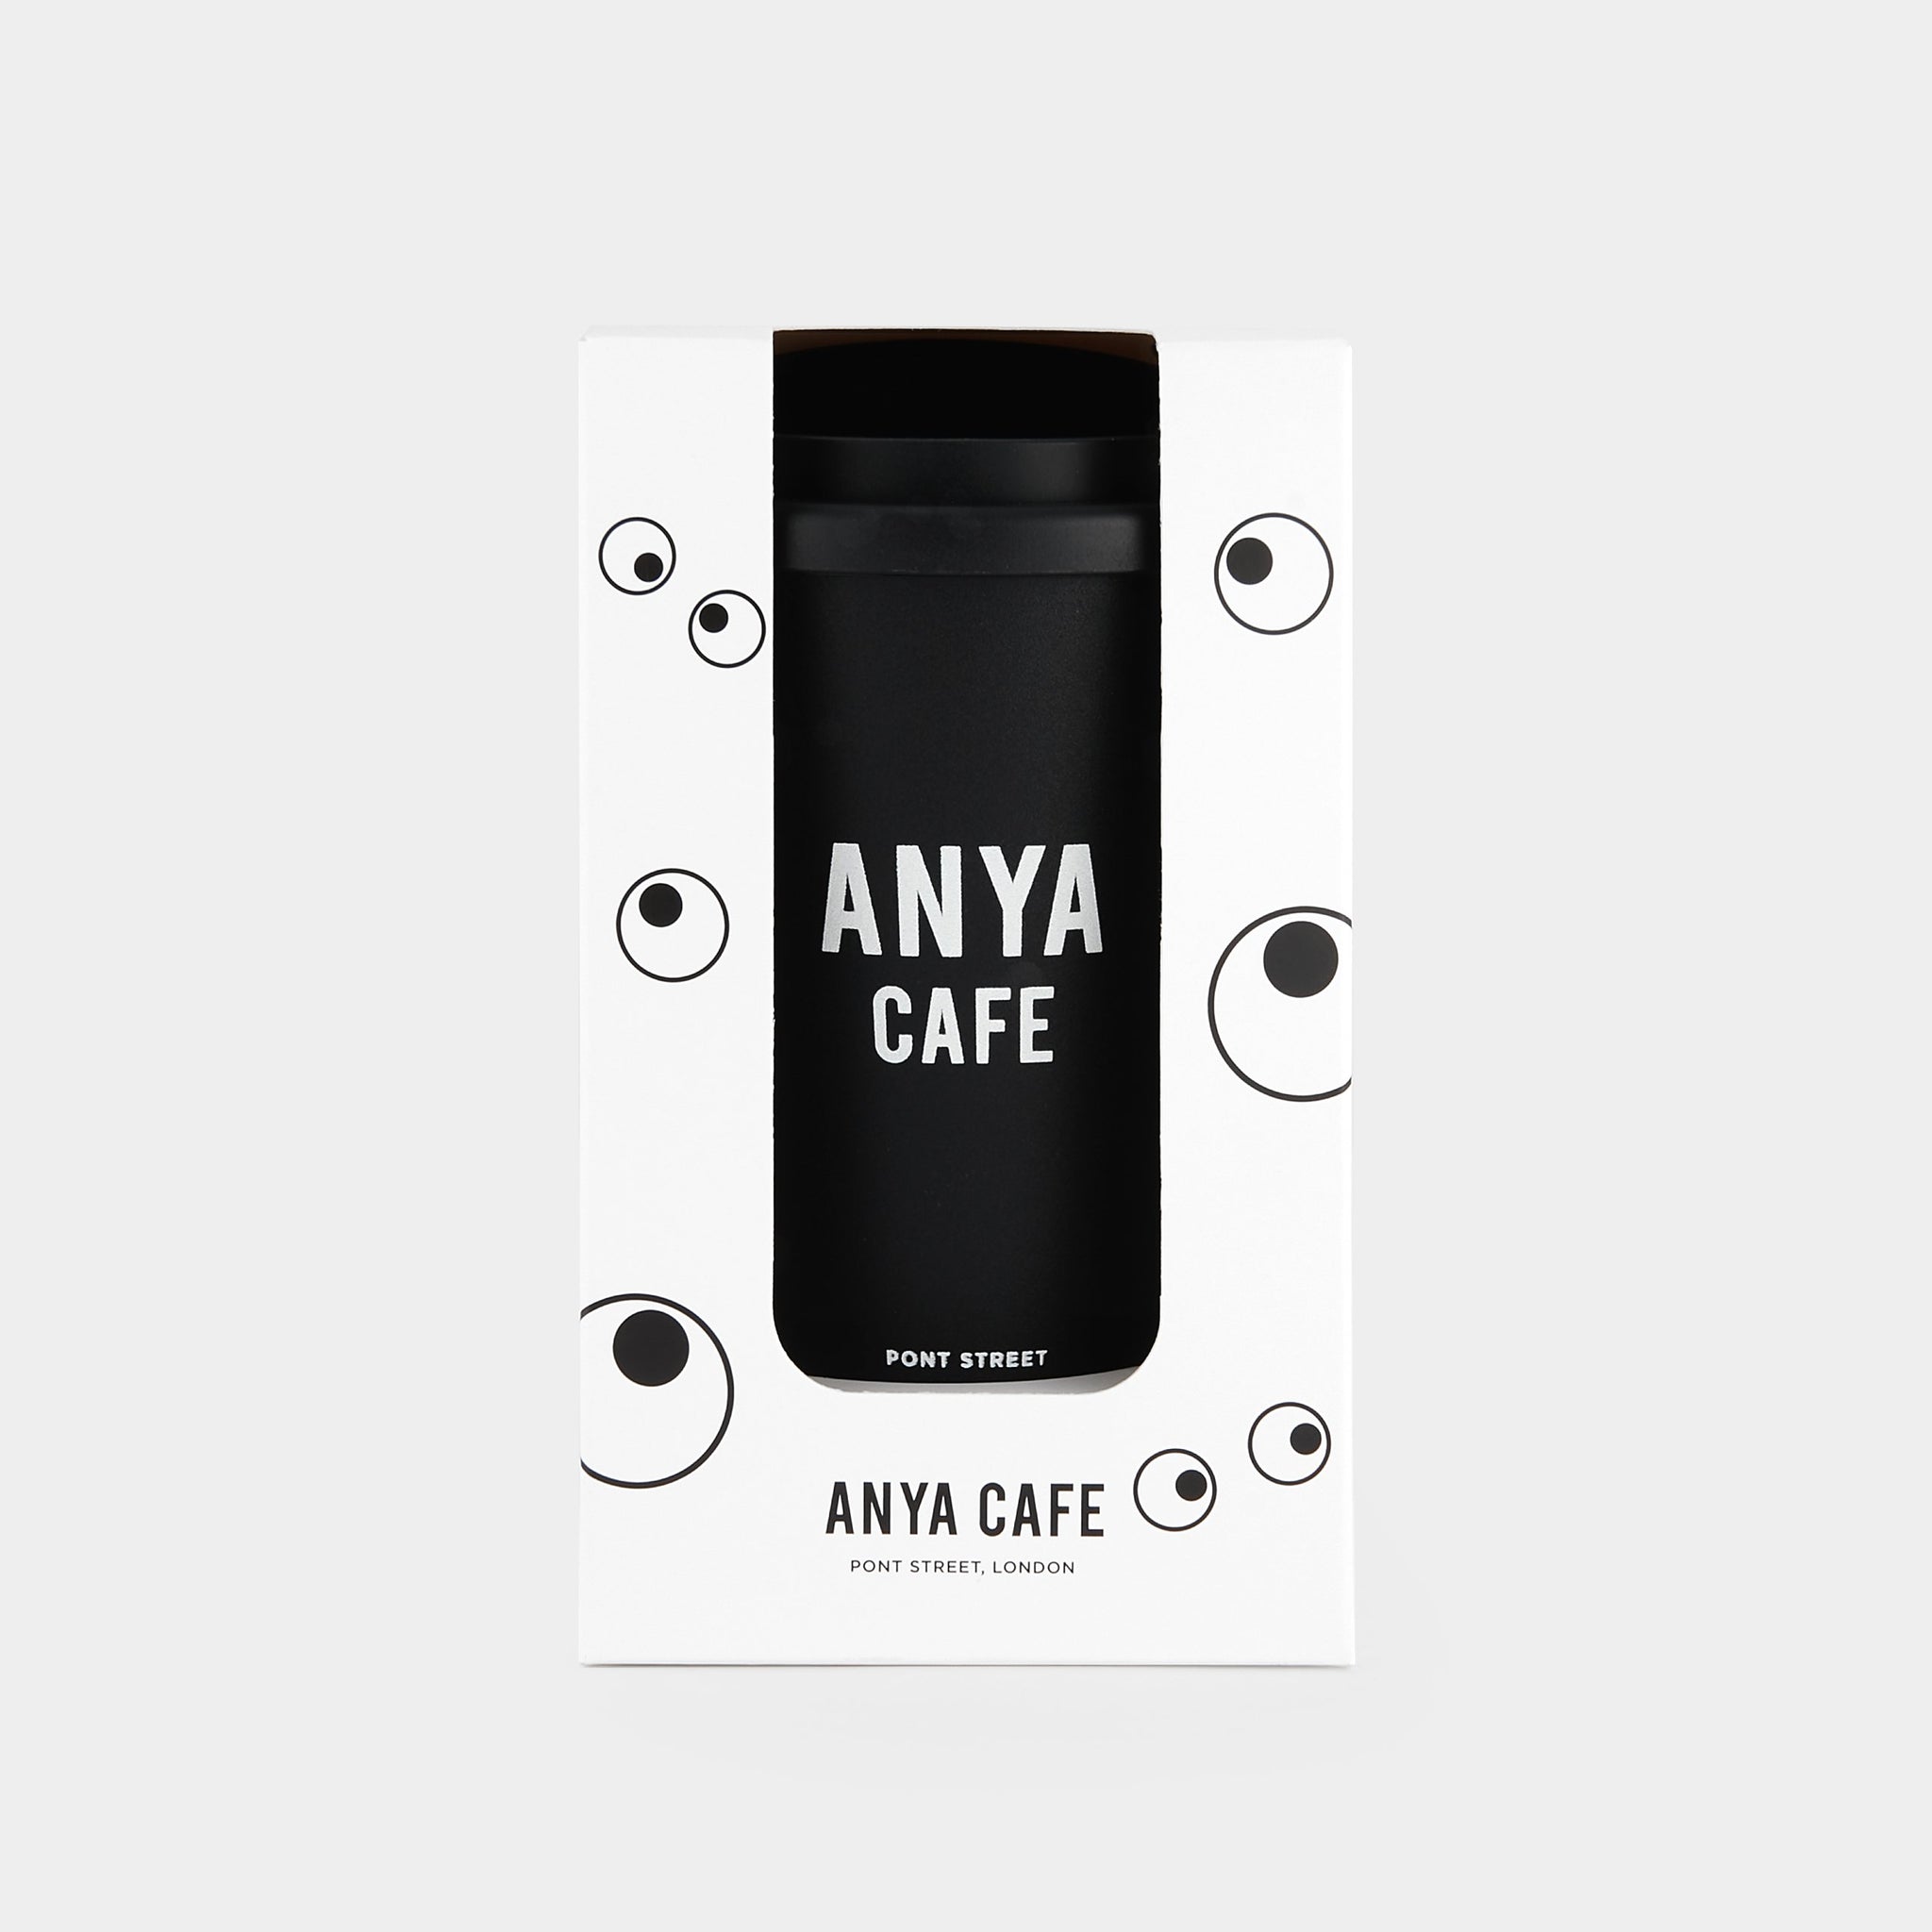 アイズ コーヒータンブラー -

                  
                    Coffee Cup Eyes in Black -
                  

                  Anya Hindmarch JP
